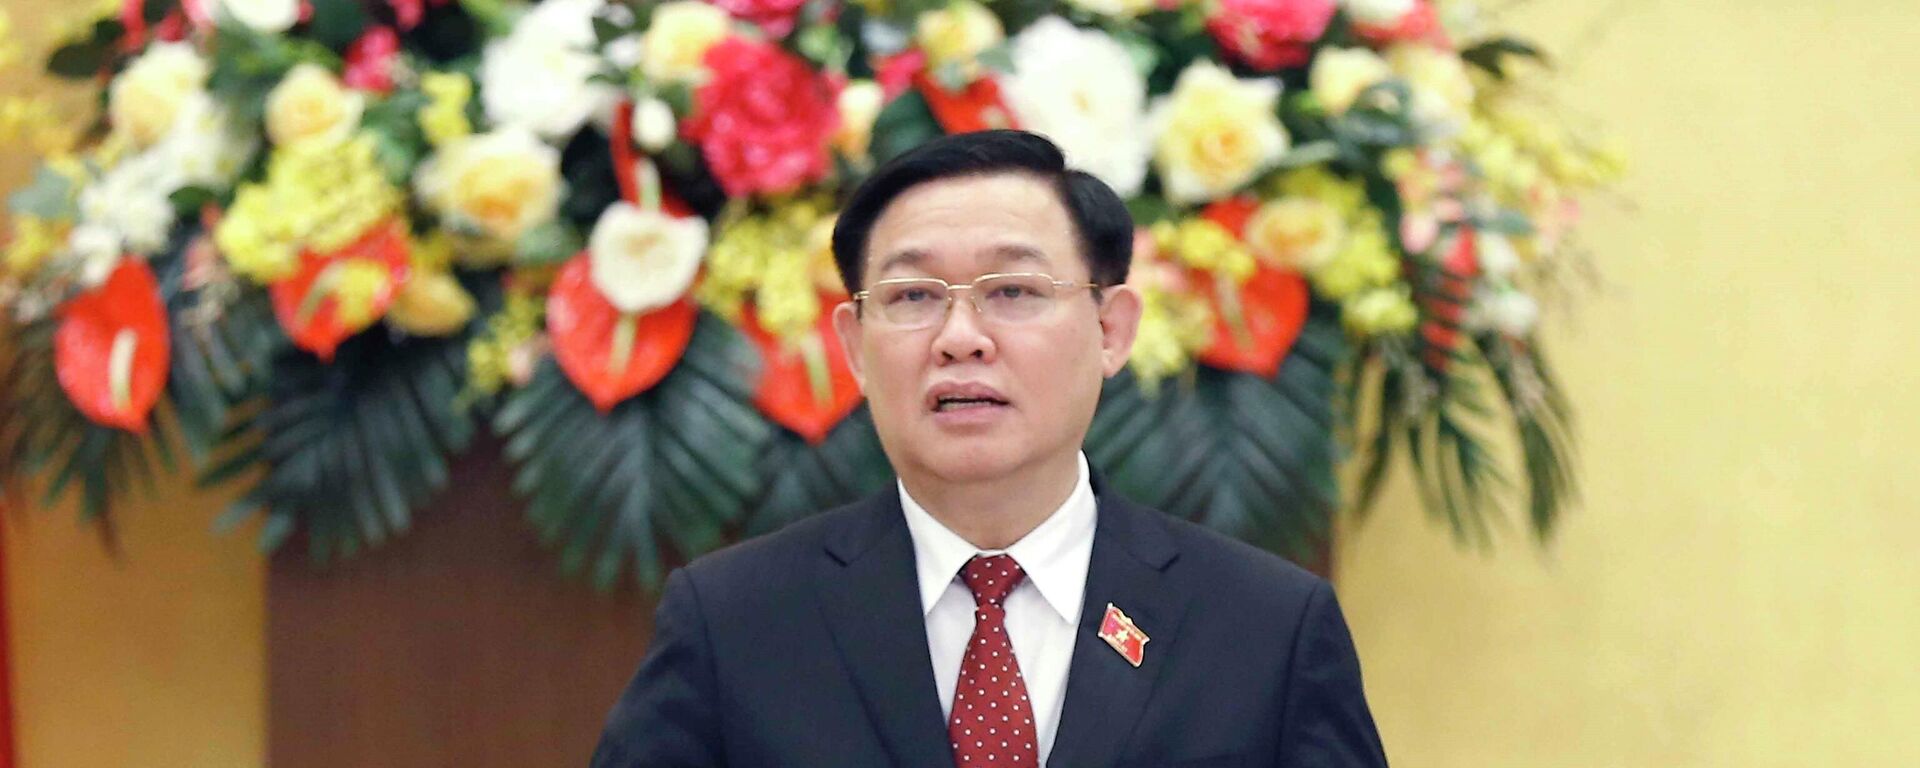 Chủ tịch Quốc hội Vương Đình Huệ chủ trì Hội nghị triển khai thực hiện chương trình giám sát của Quốc hội năm 2022 - Sputnik Việt Nam, 1920, 09.12.2021